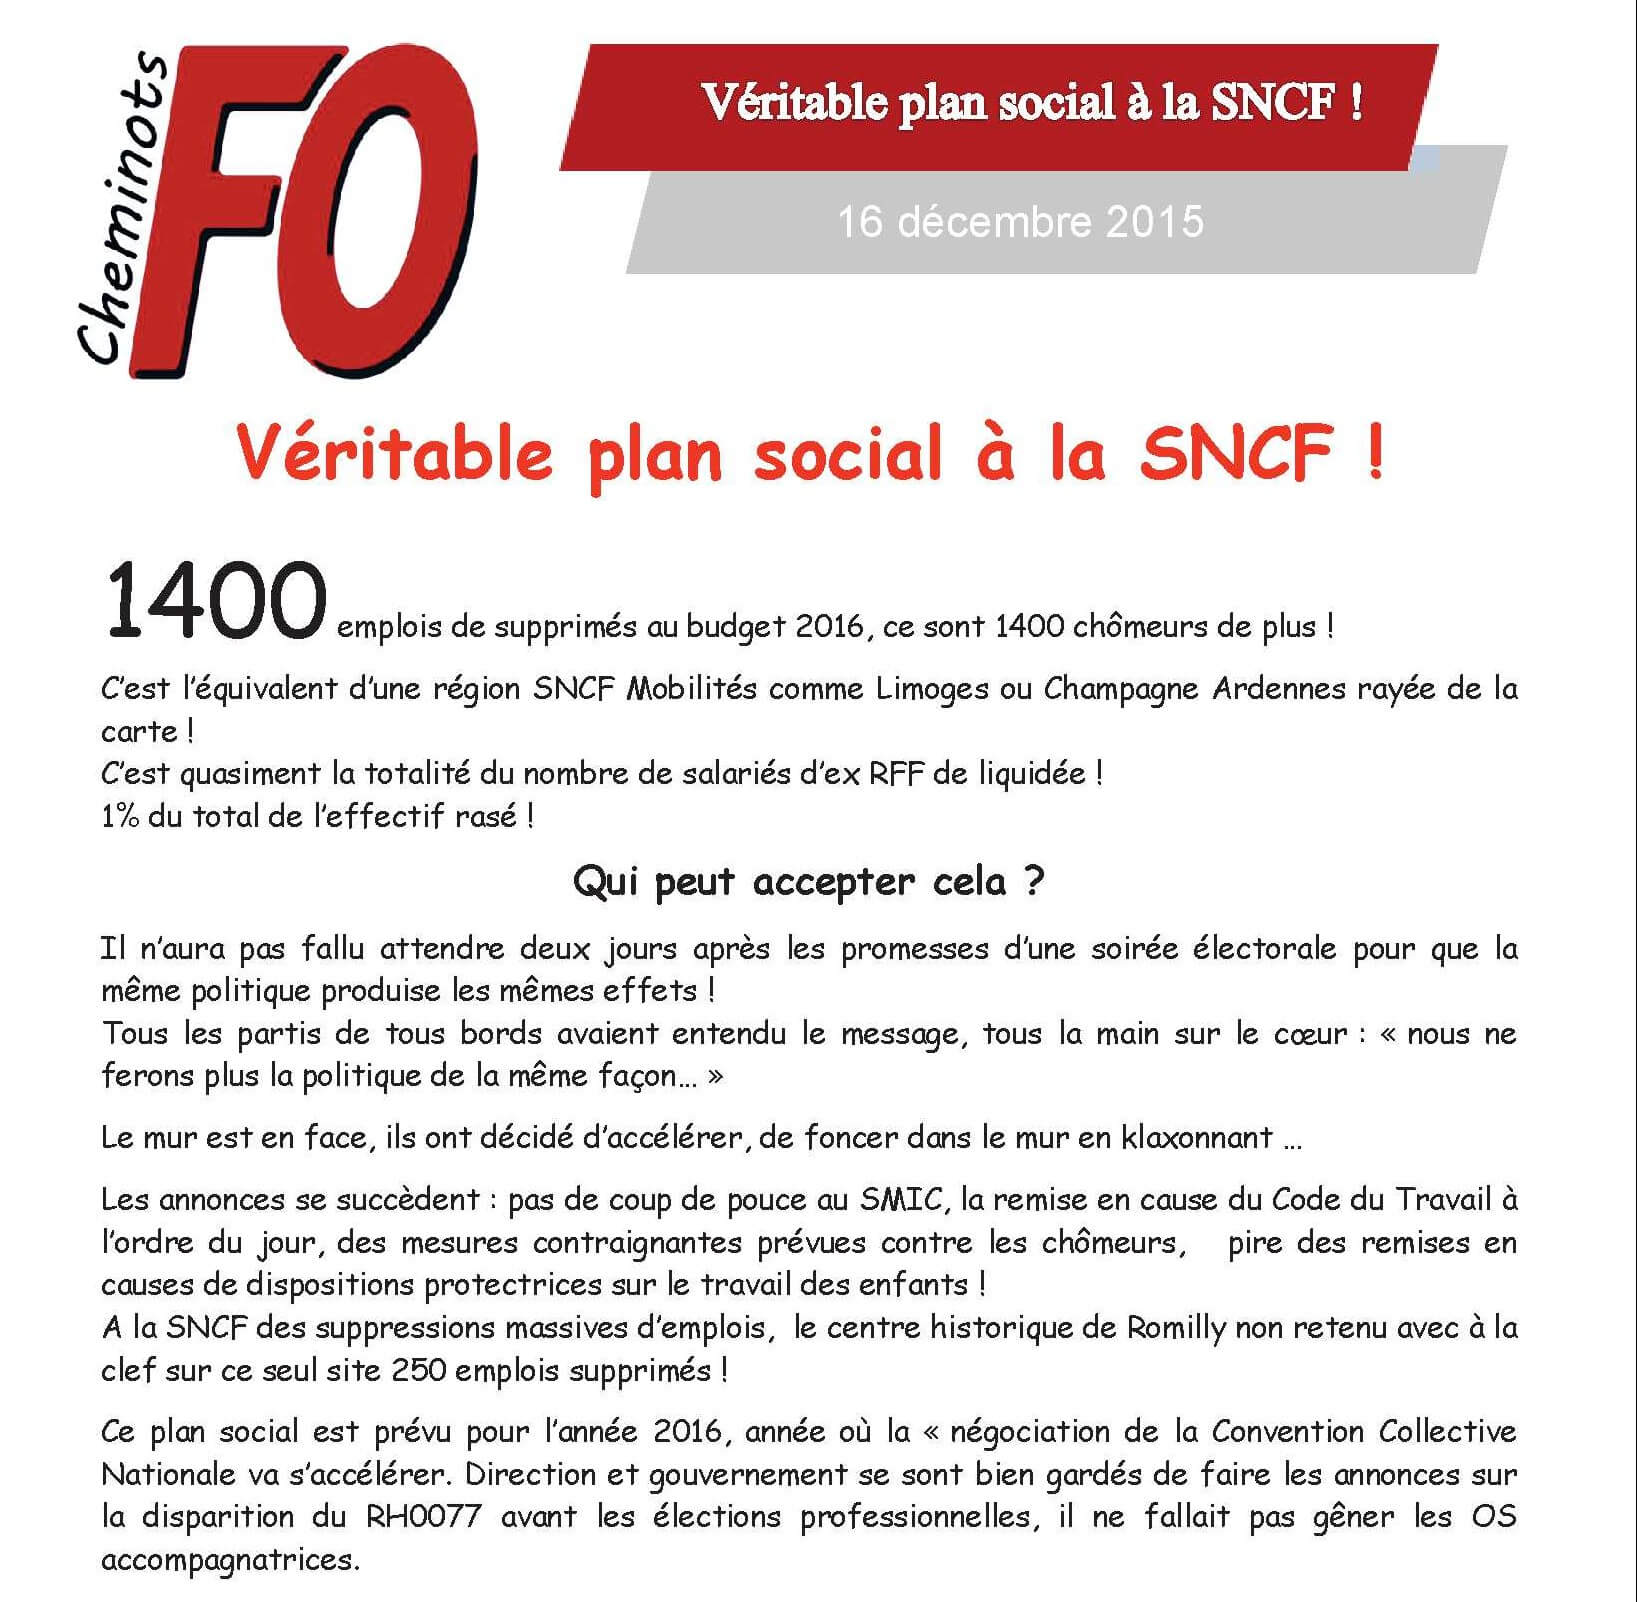 Véritable plan social à la SNCF